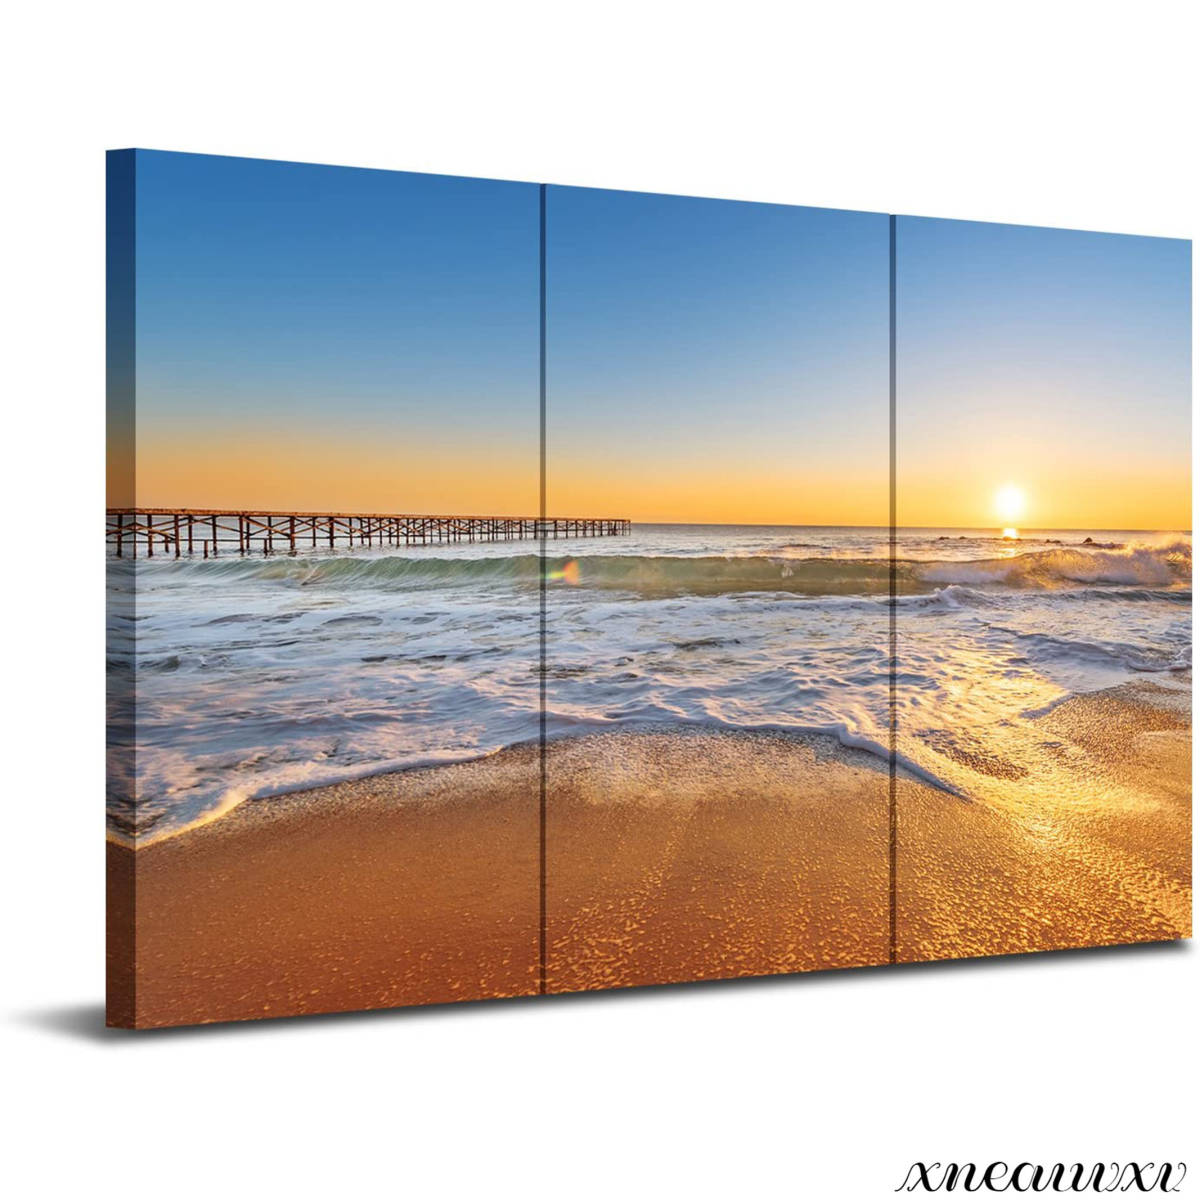 限定品通販サイト きれいな海 大型のアートパネル ビーチ 海岸 夕日